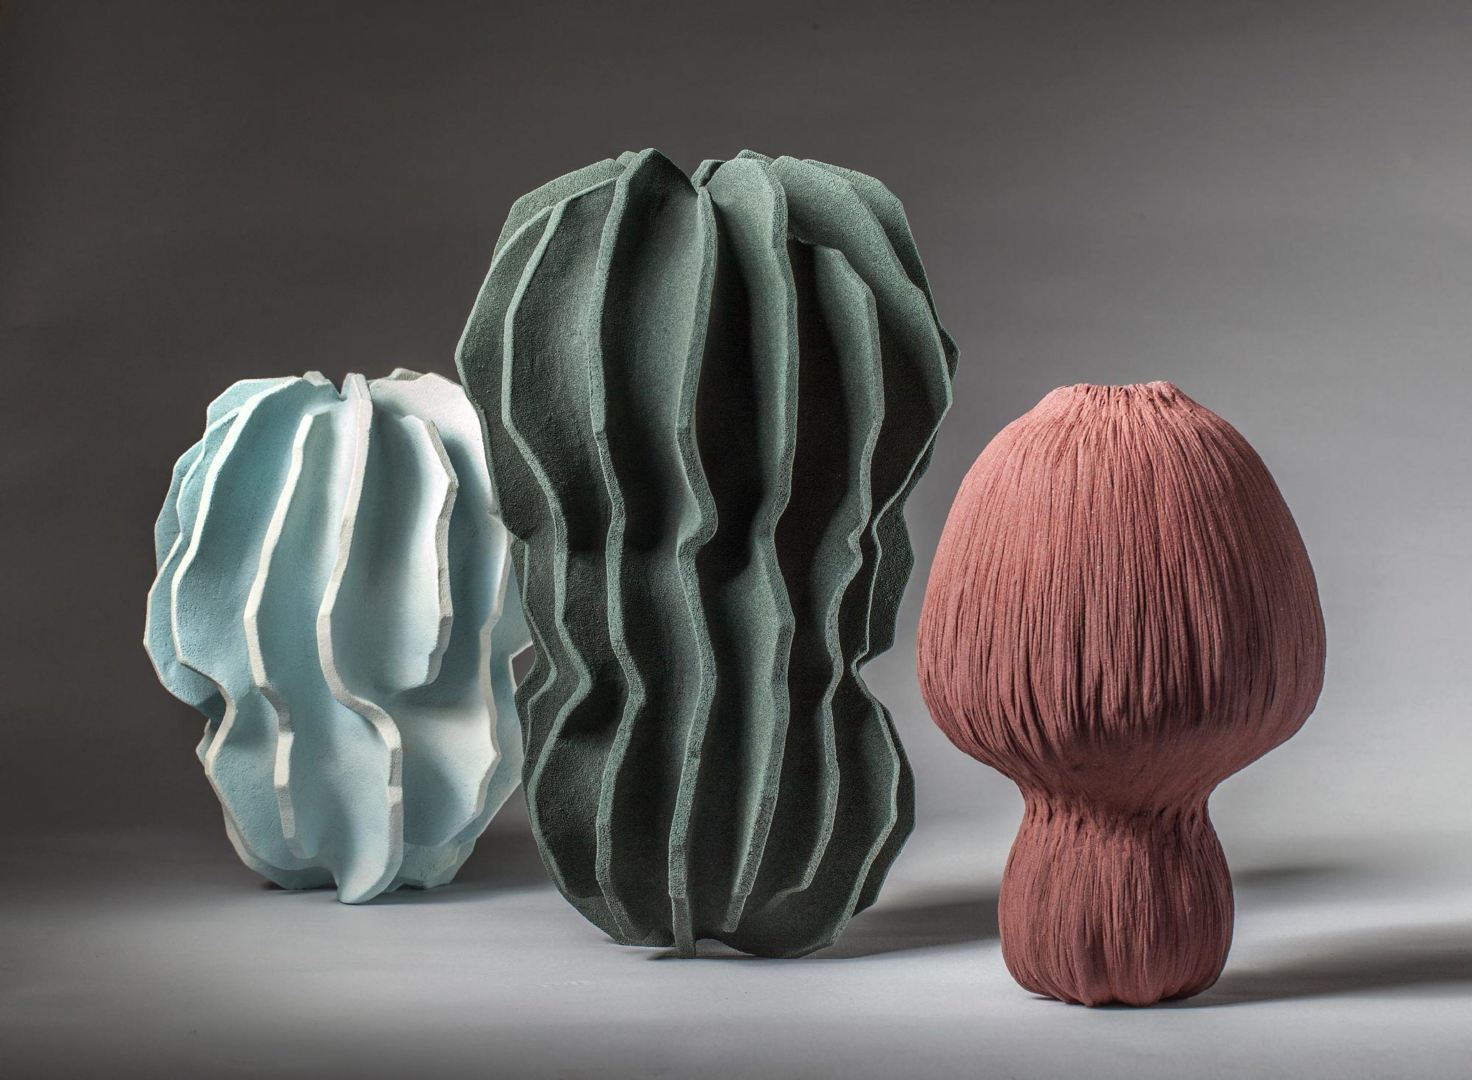 哥本哈根的艺术家turi heisselberg花了近二十年的时间创作陶瓷作品